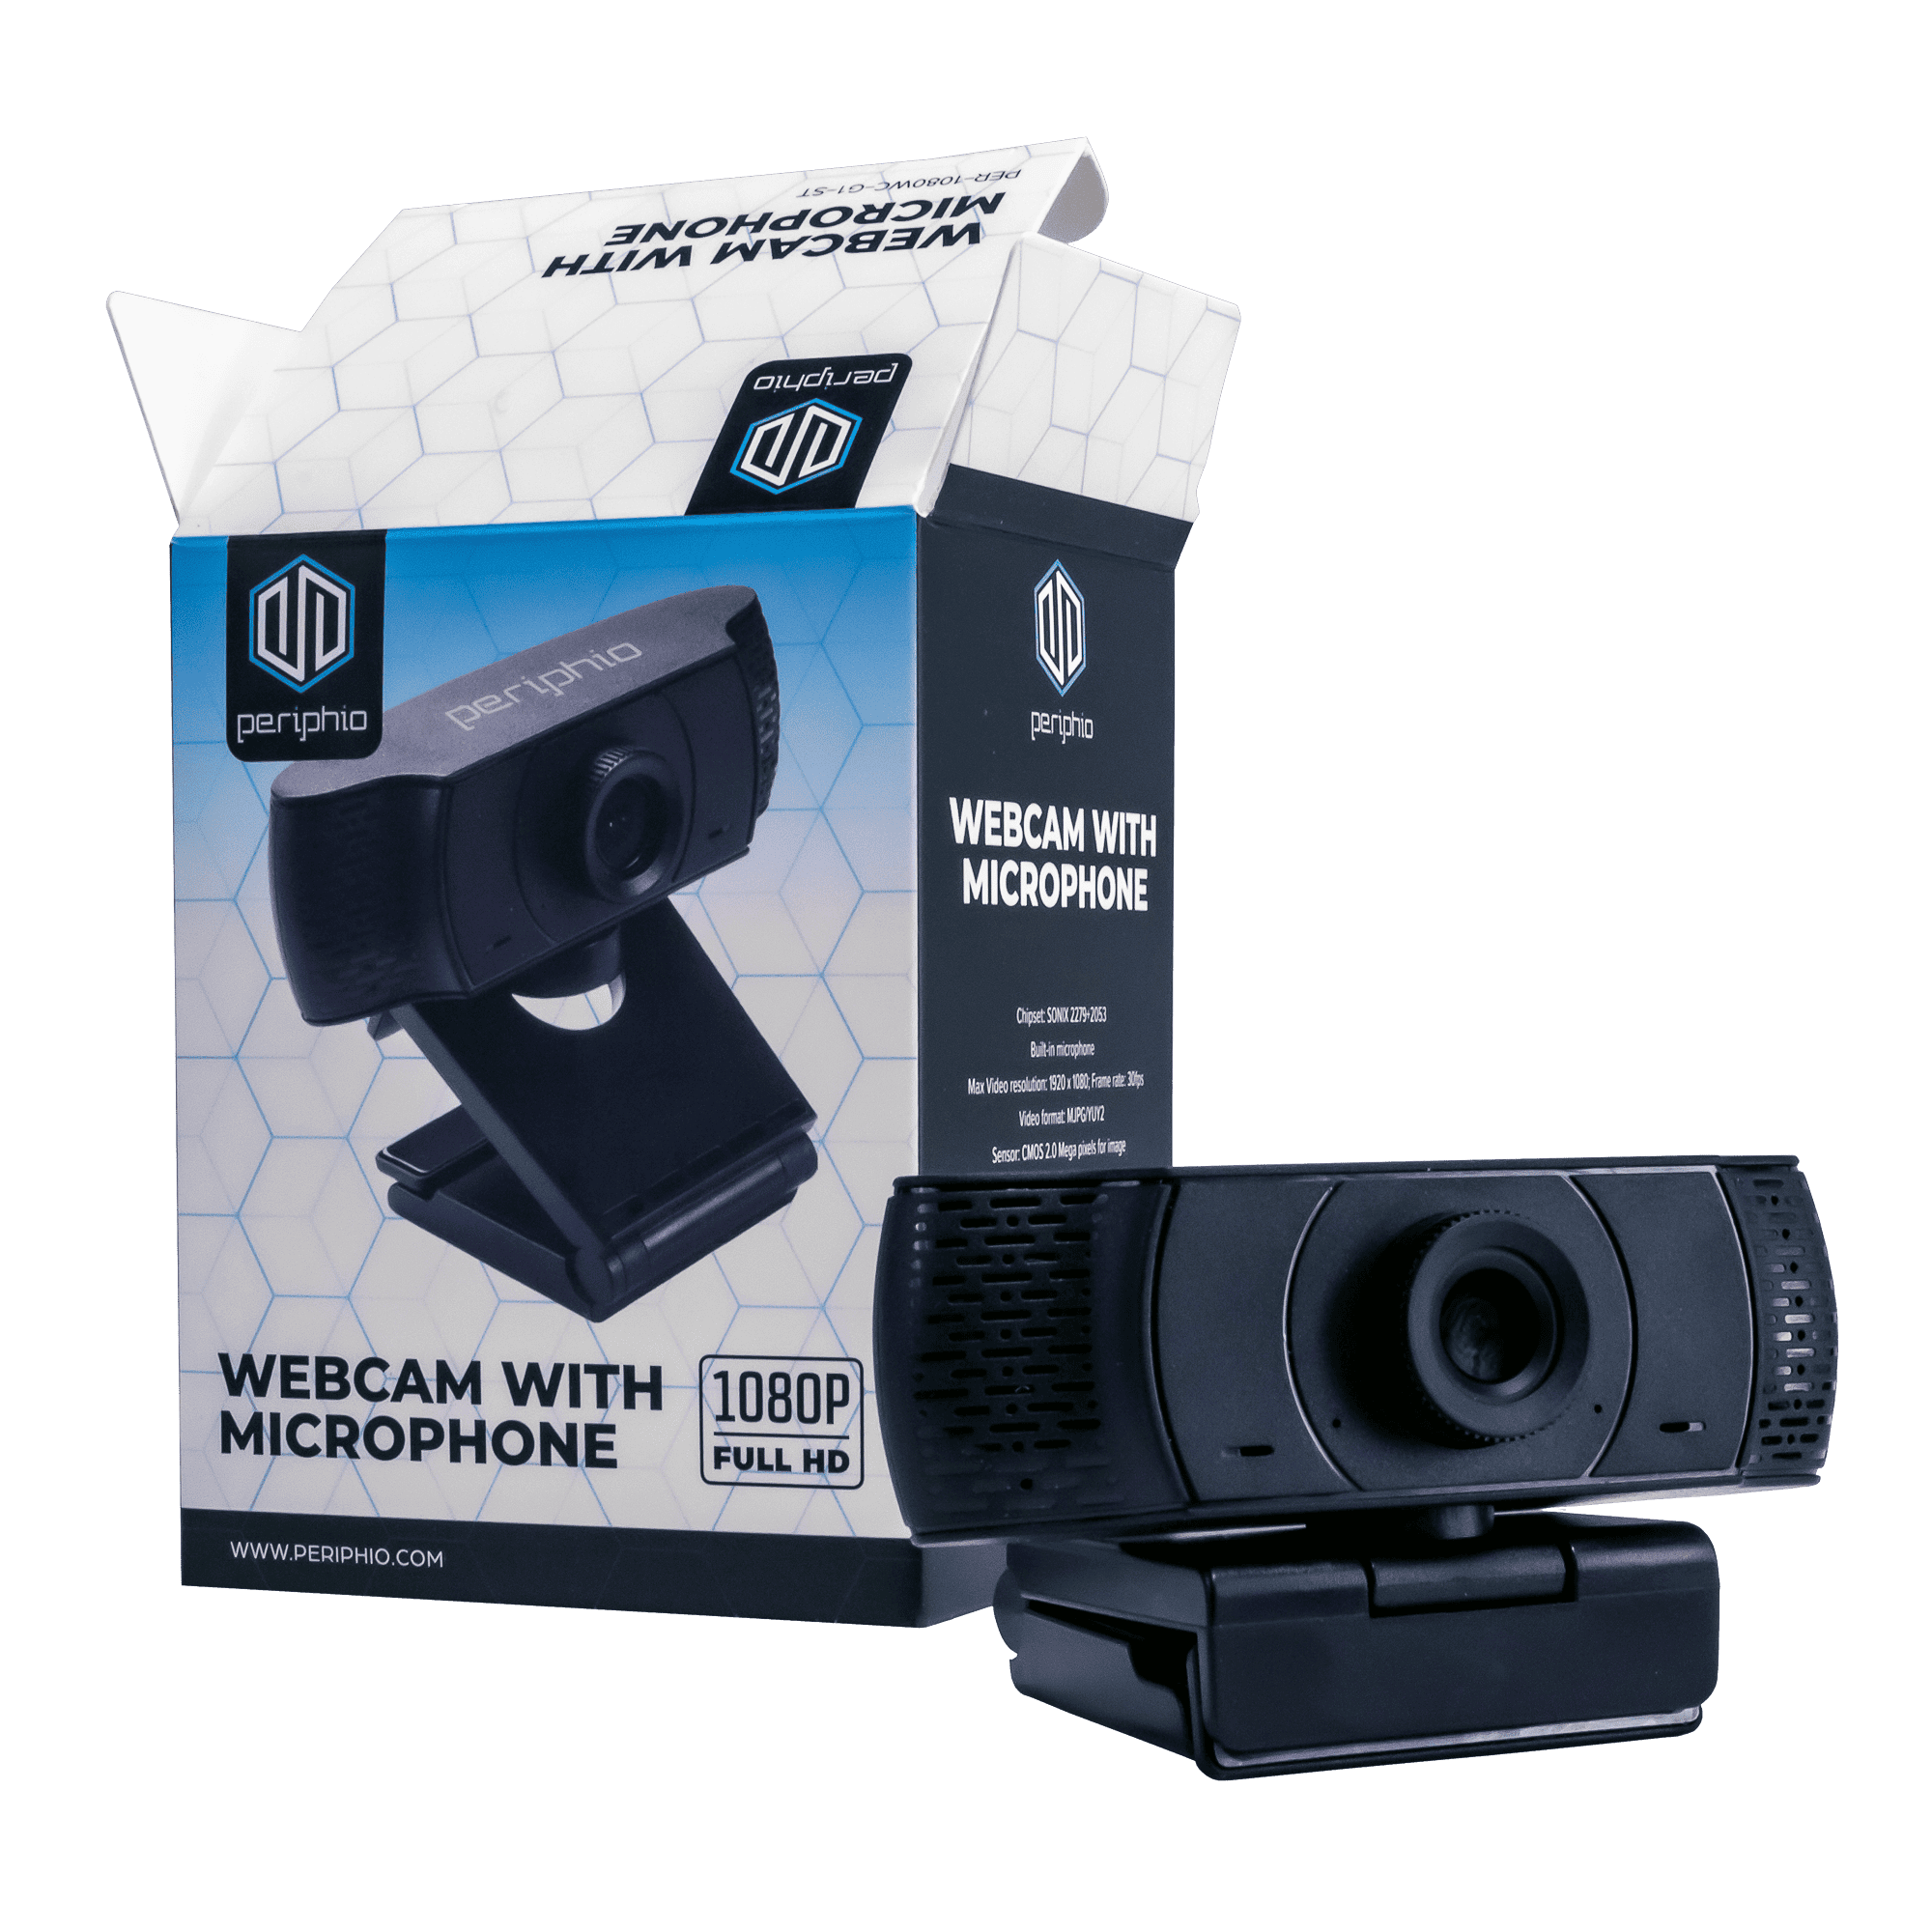 kone aflivning forælder 1080P Full HD Webcam with Microphone